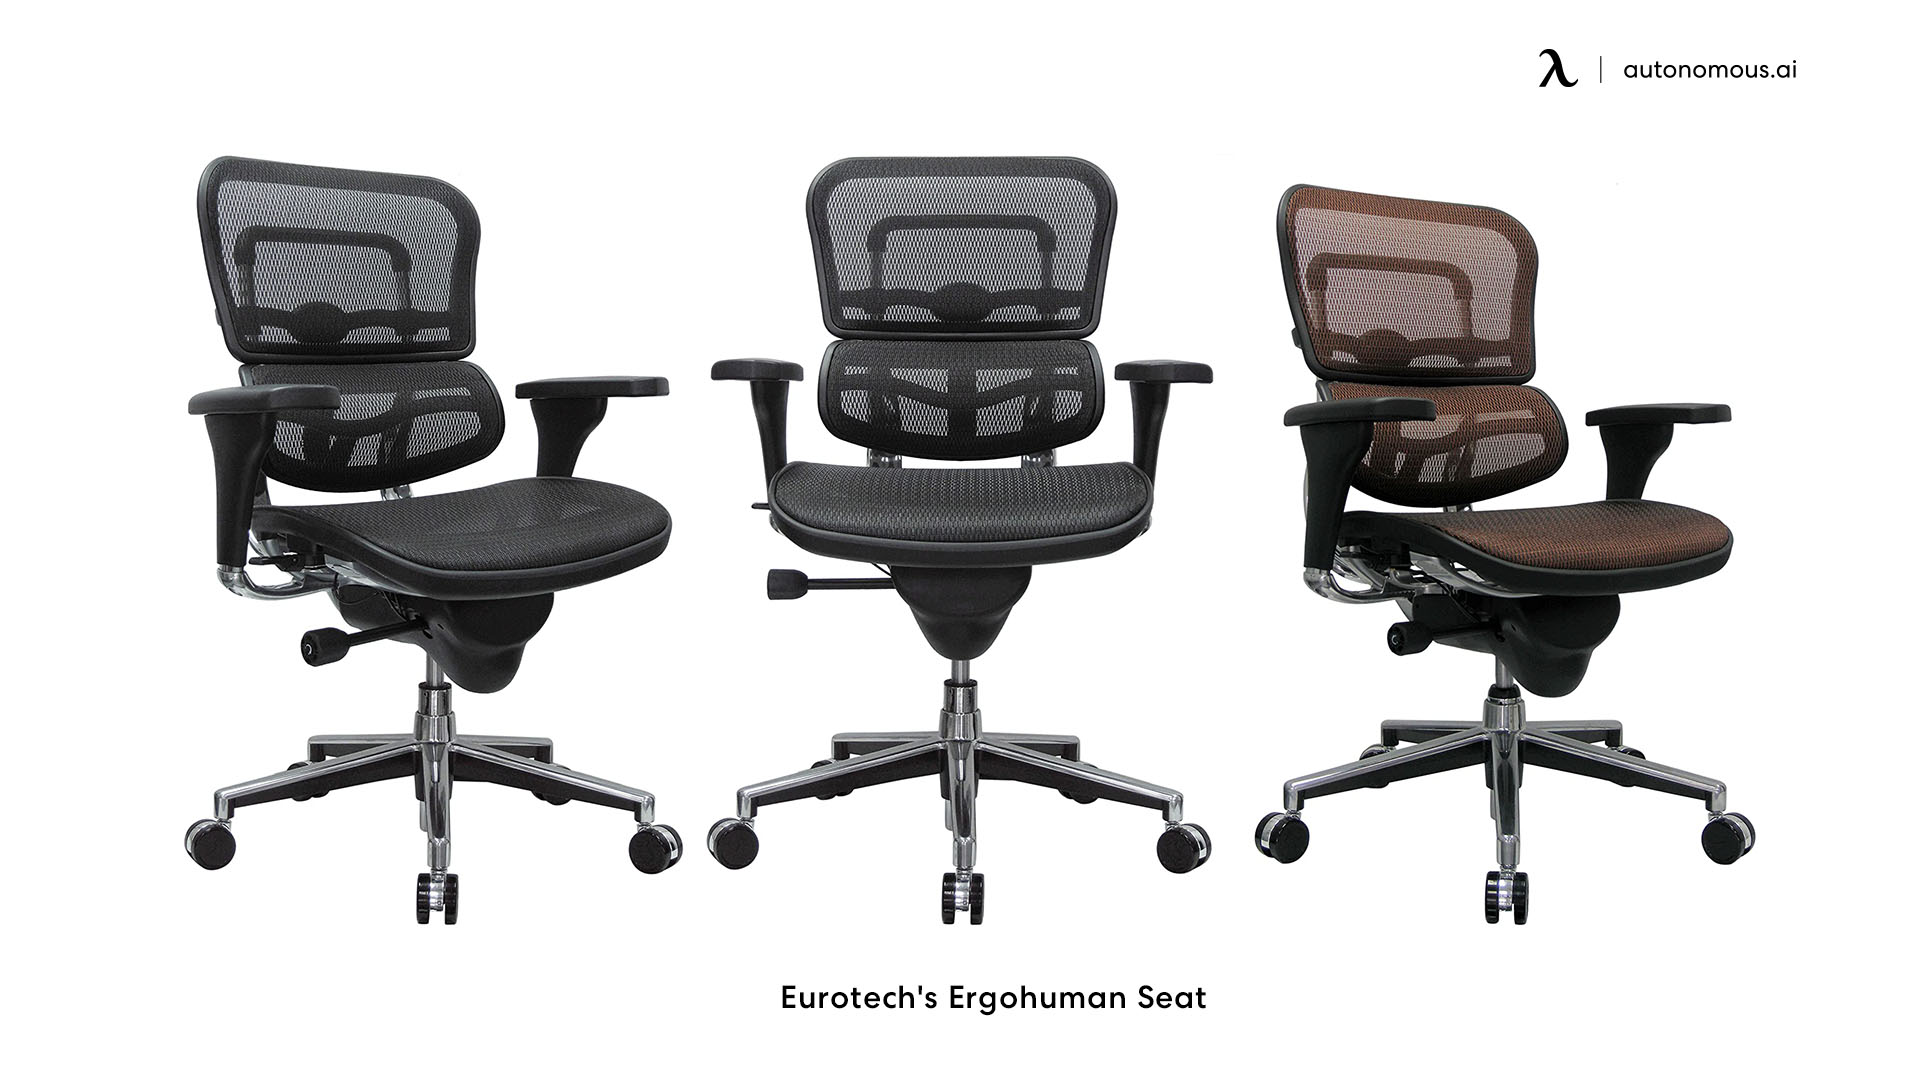 Eurotech's Ergohuman Seat adjustable height chair